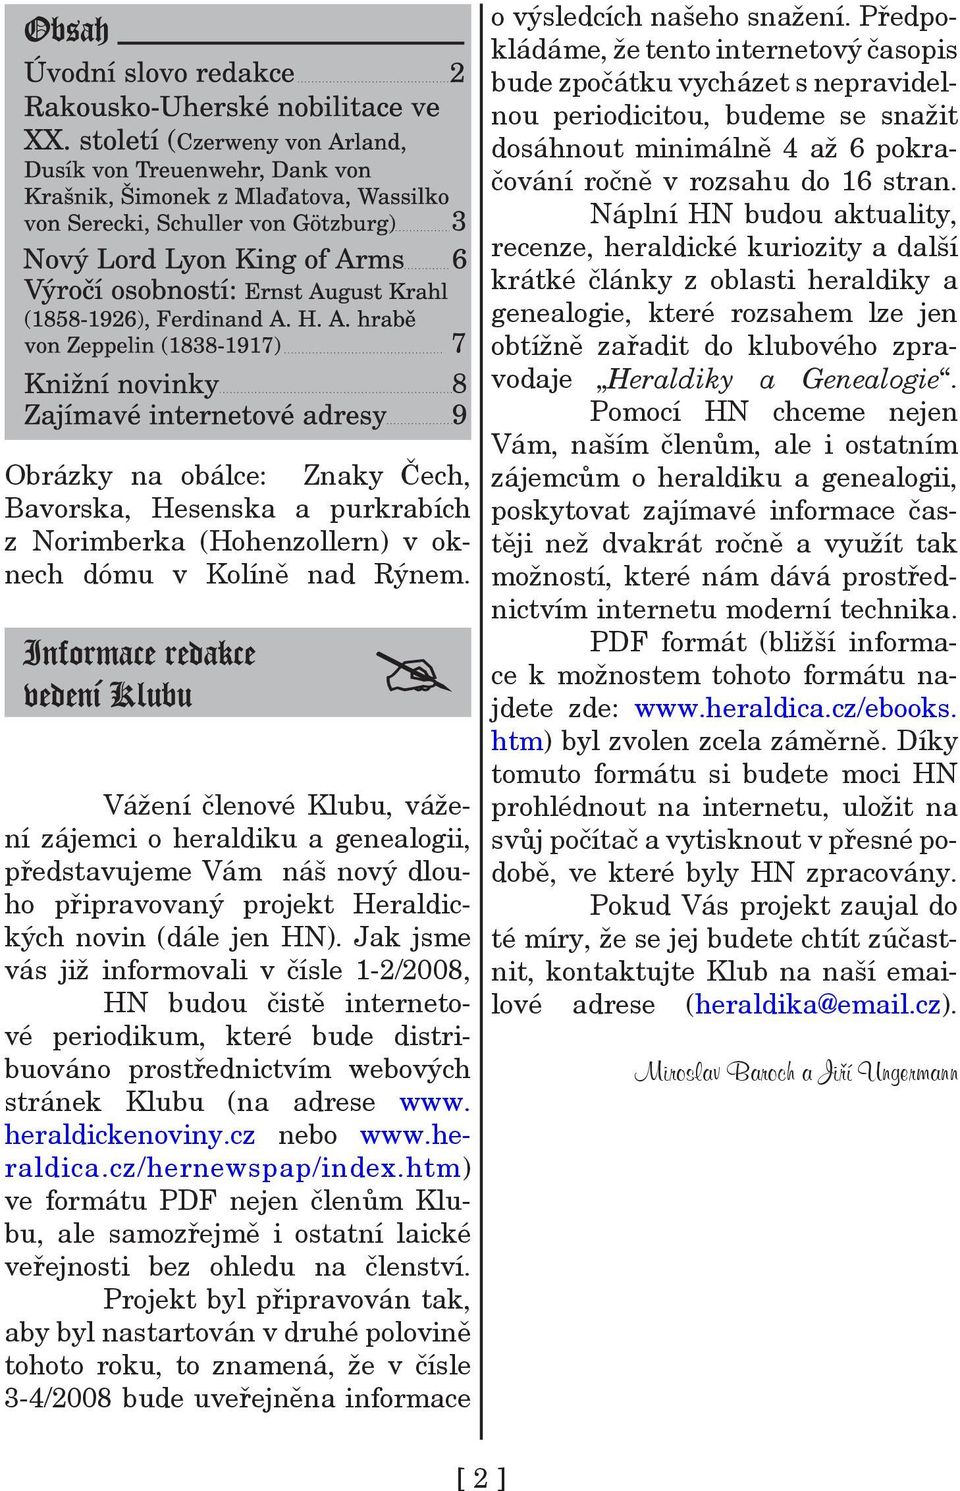 Jak jsme vás již informovali v čísle 1-2/2008, HN budou čistě internetové periodikum, které bude distribuováno prostřednictvím webových stránek Klubu (na adrese www. heraldickenoviny.cz nebo www.